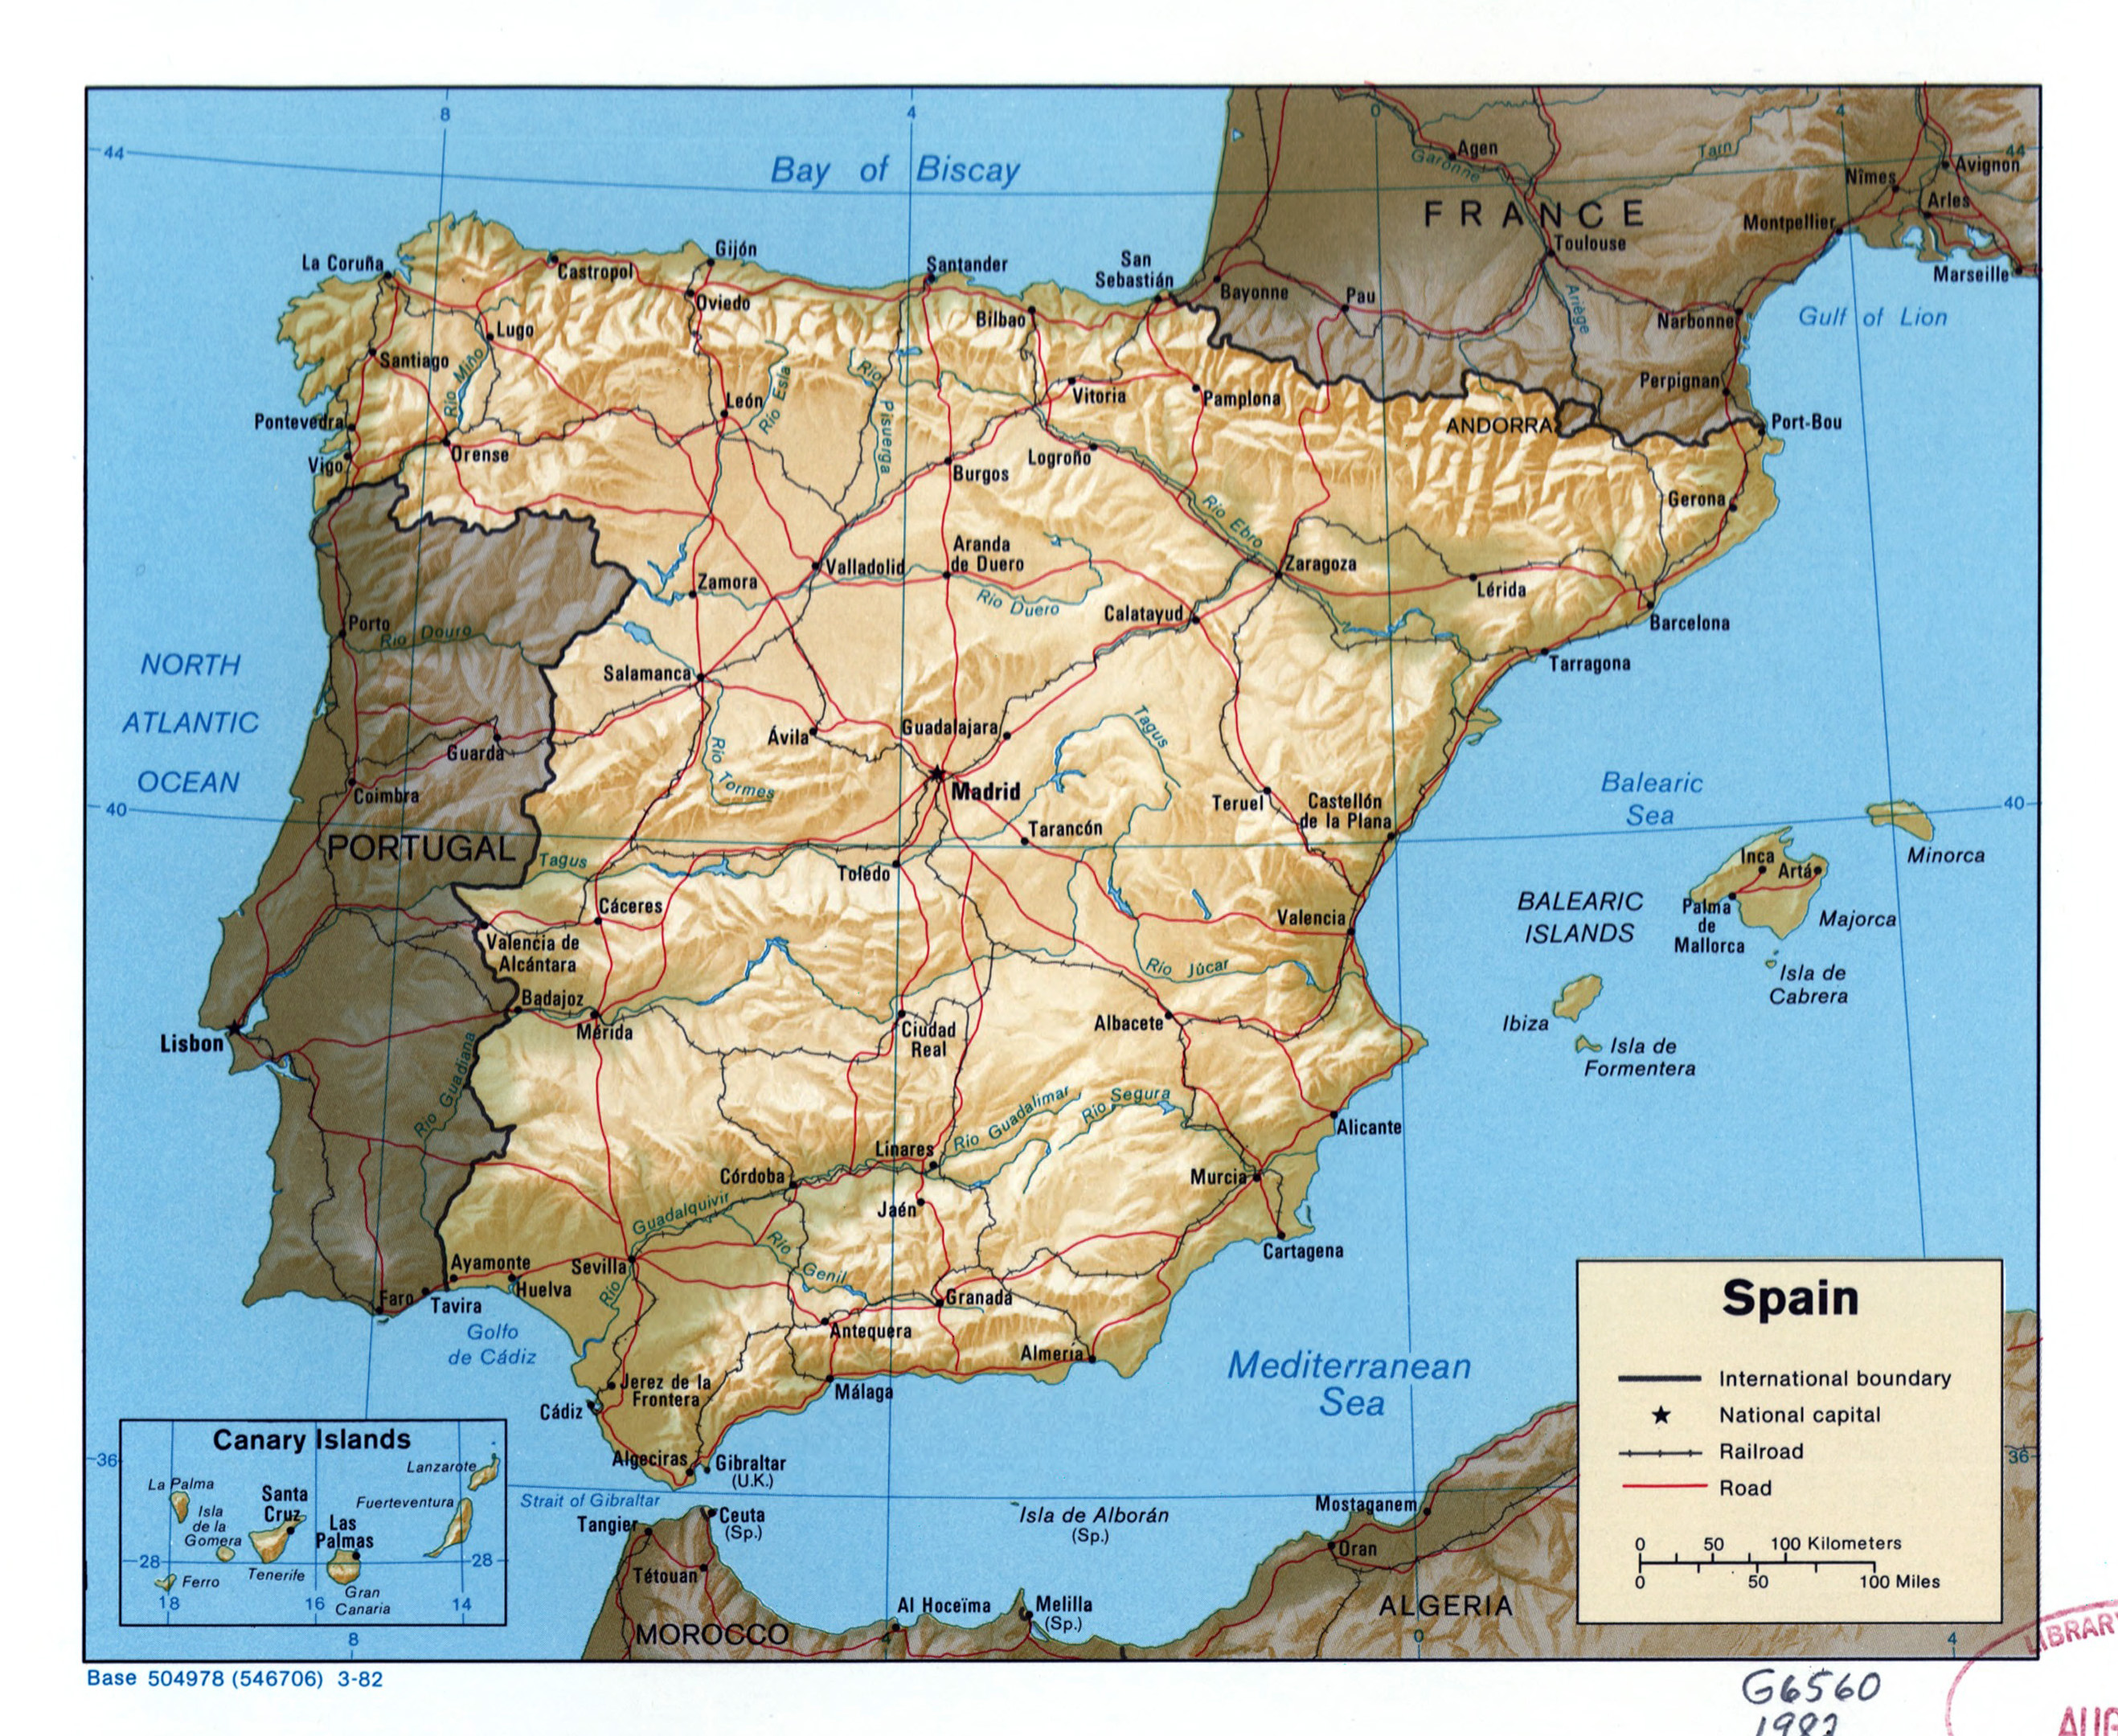 Grande detallado mapa físico de España y Portugal con carreteras, ciudades  y aeropuertos, España, Europa